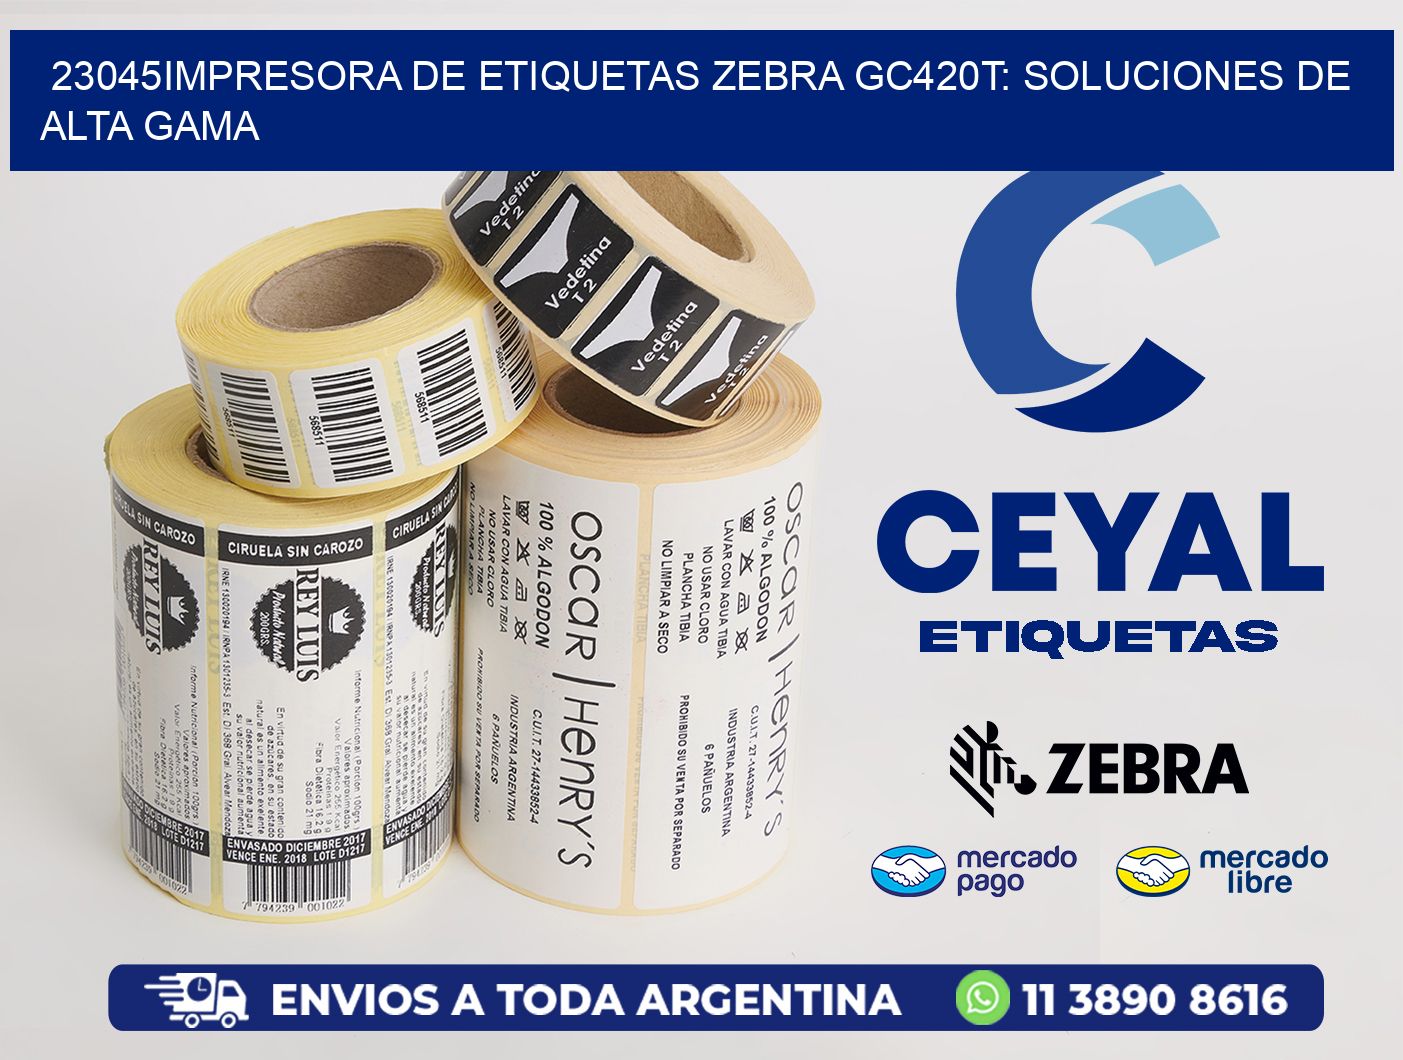 23045Impresora de Etiquetas Zebra GC420T: Soluciones de Alta Gama